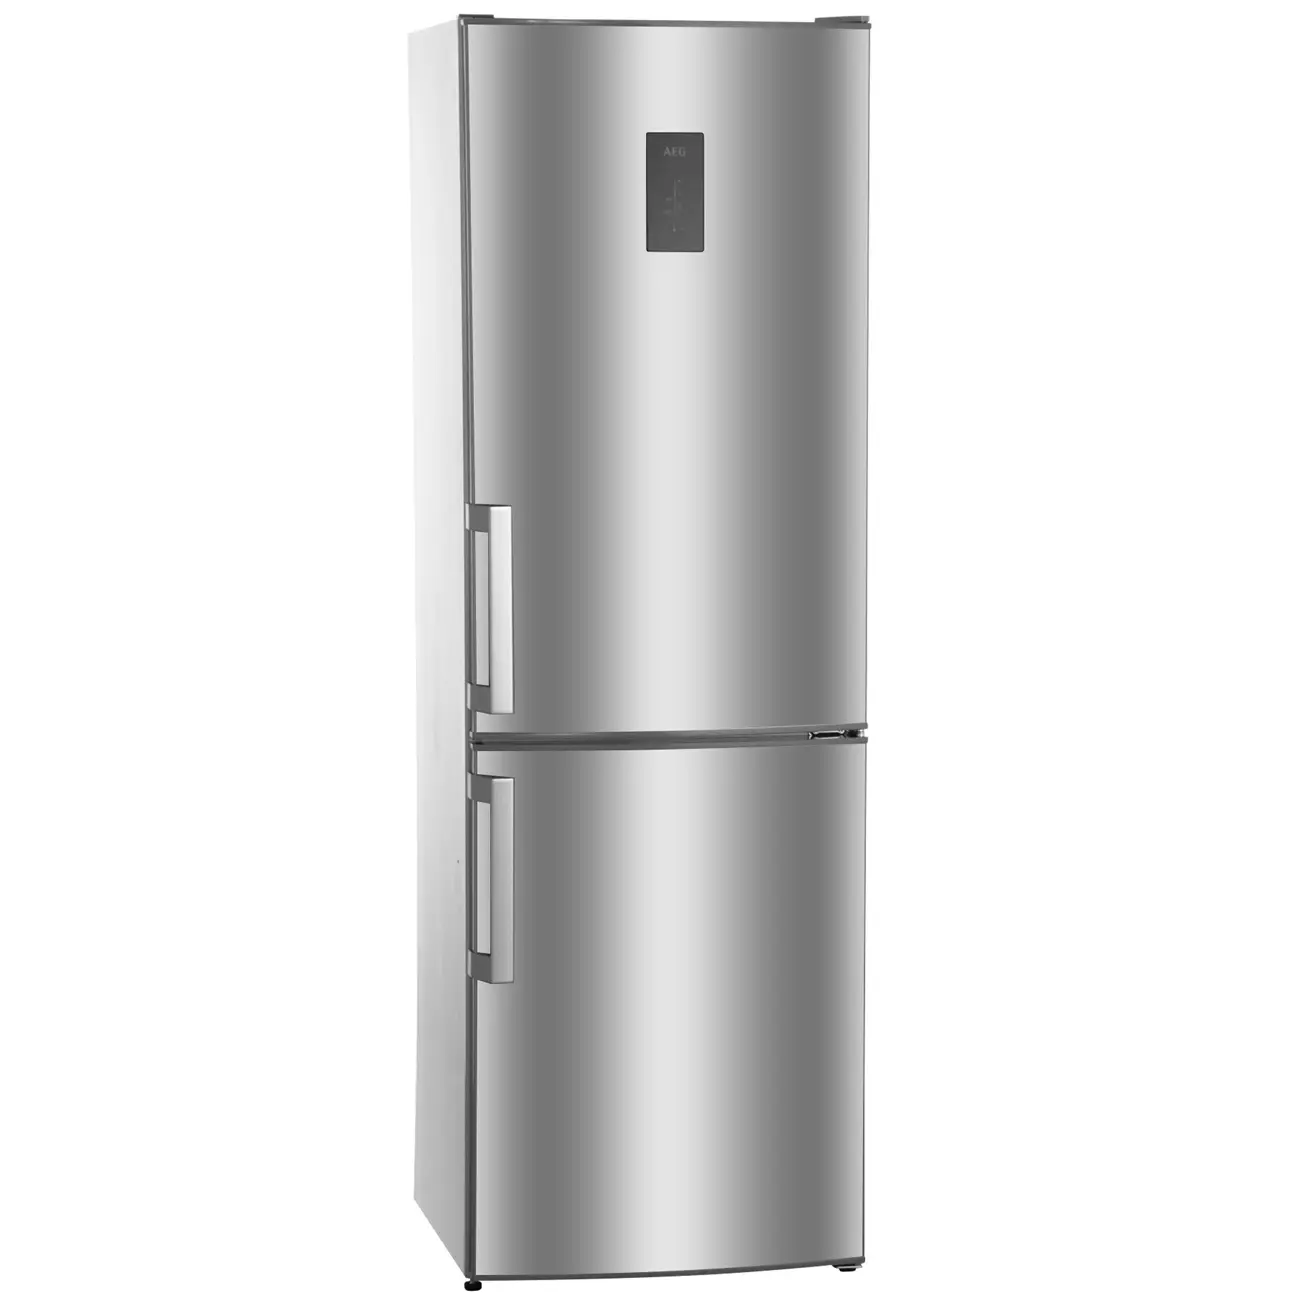 Магазин м видео каталог холодильников. Холодильник AEG rcb63426tx. Холодильник AEG S 83600 cmm0. AEG холодильник rcb63426tx производитель. Холодильник AEG rcb63426tx серебристый.